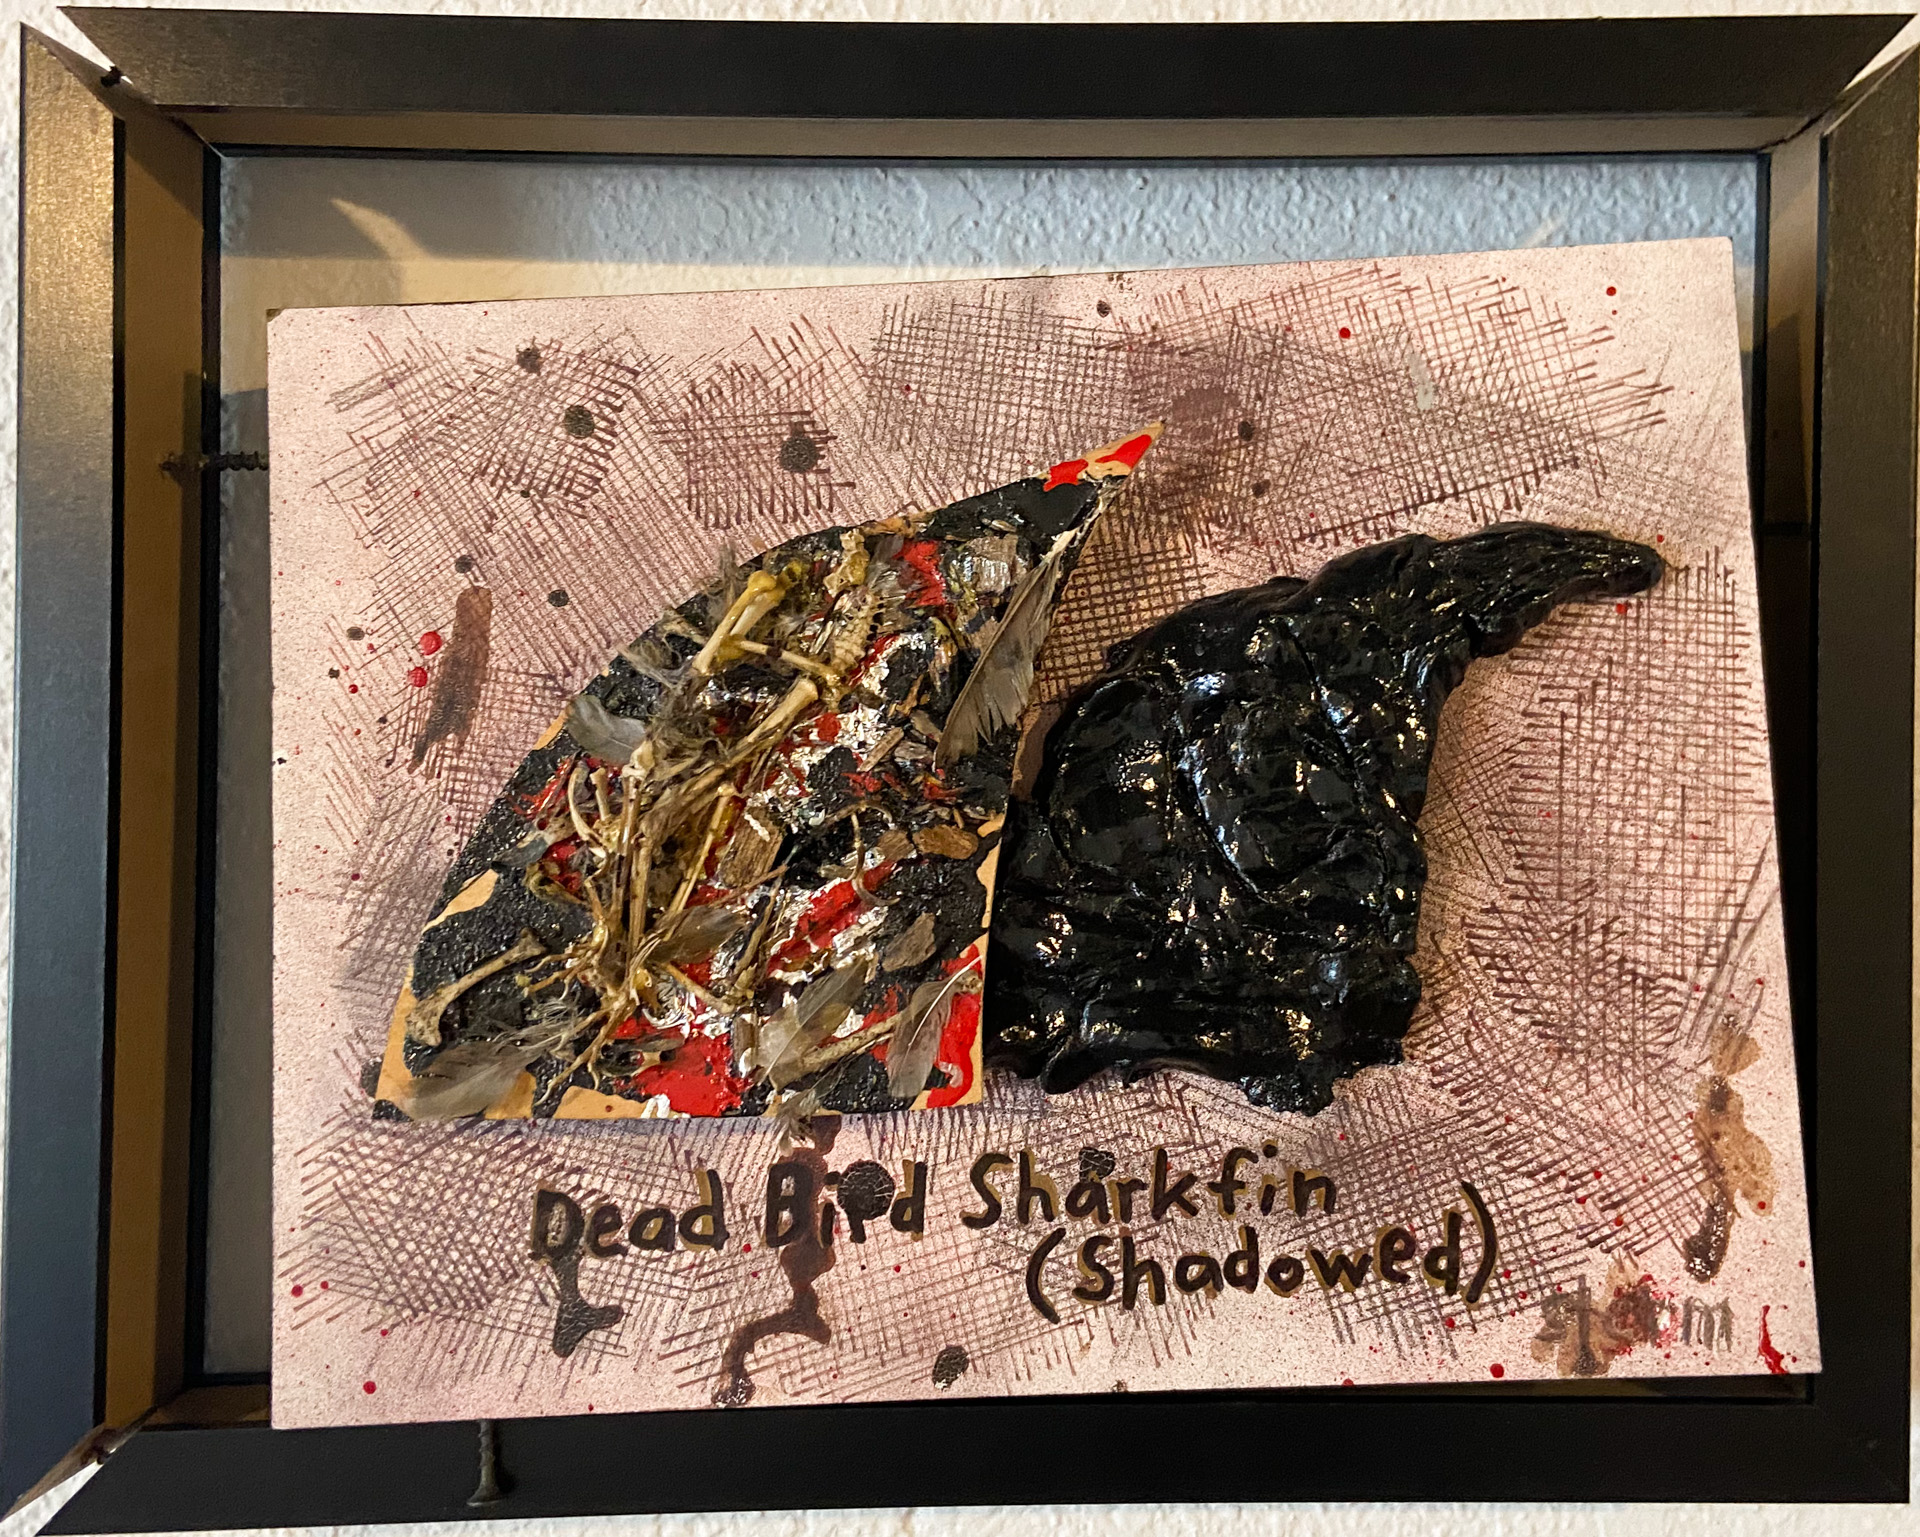 Dead Bird Sharkfin (Shadowed)